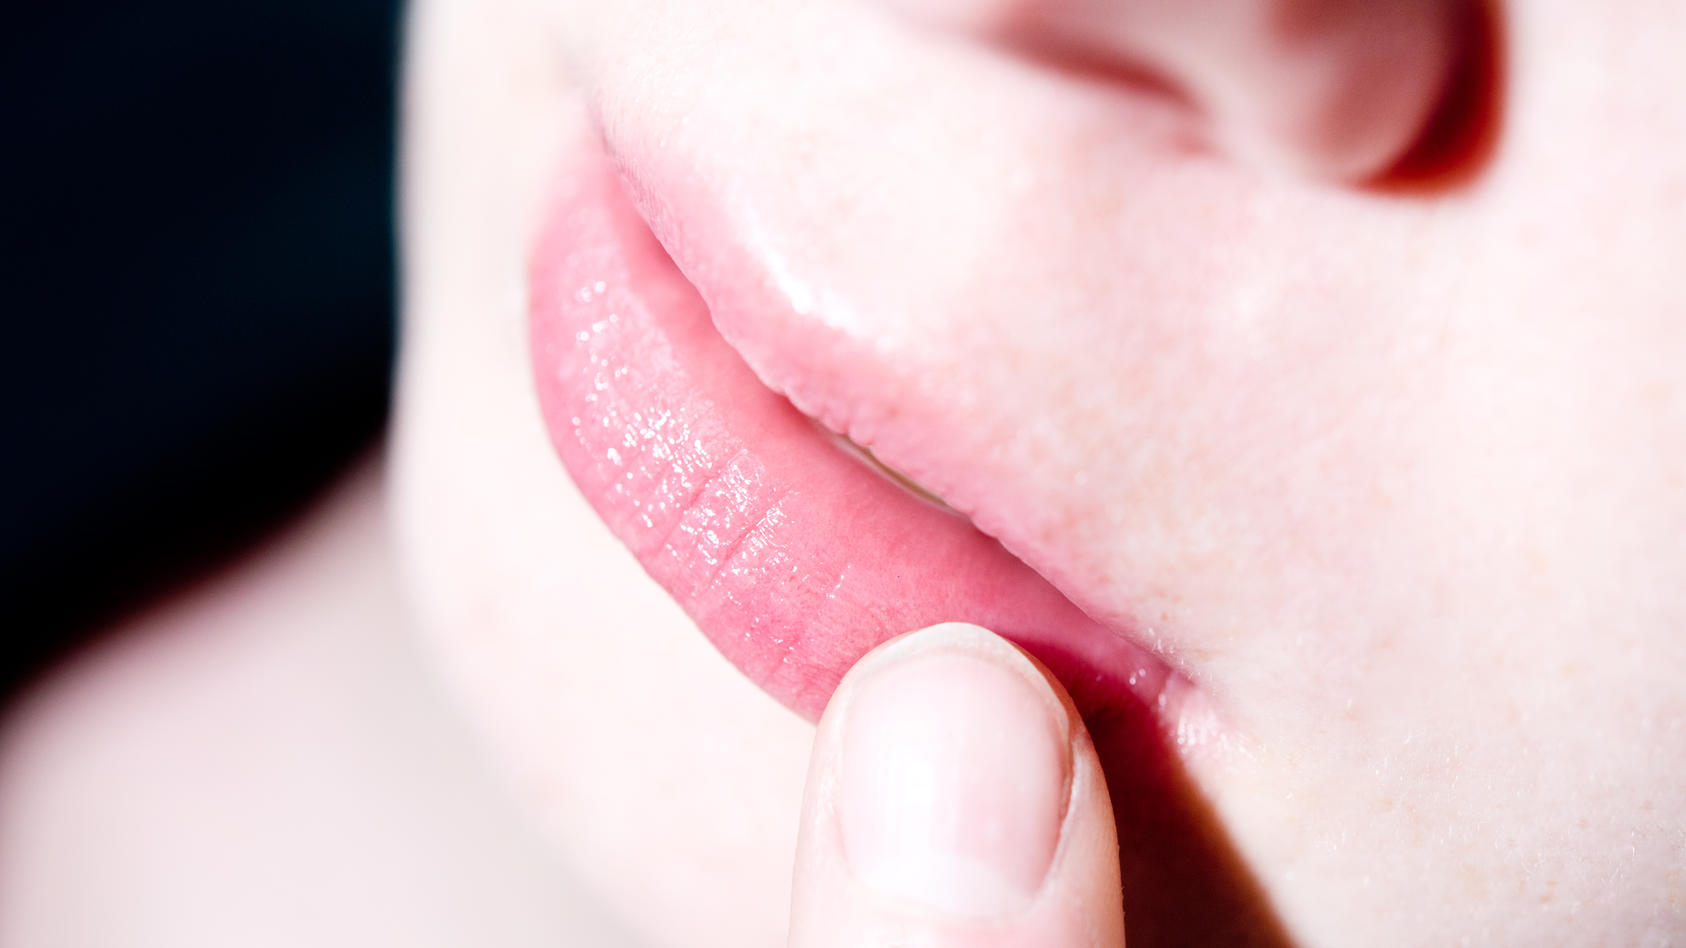 Eine Frau befühlt mit einem Finger eine juckende und schmerzende Stelle auf ihrer Lippe.